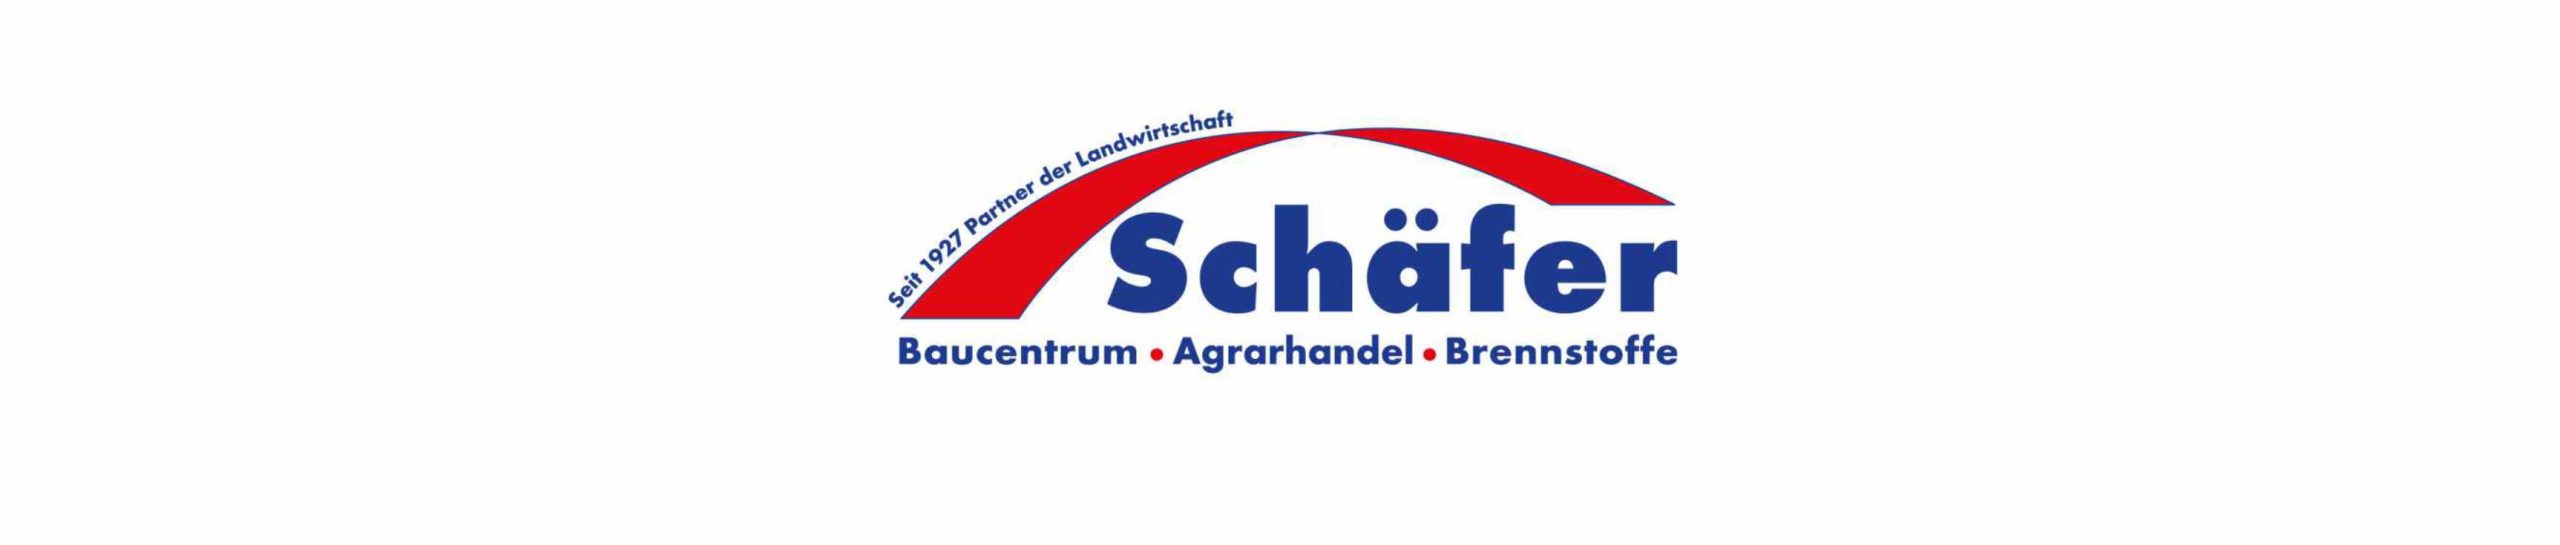 Schäfer GmbH Baucentrum - Heinebach